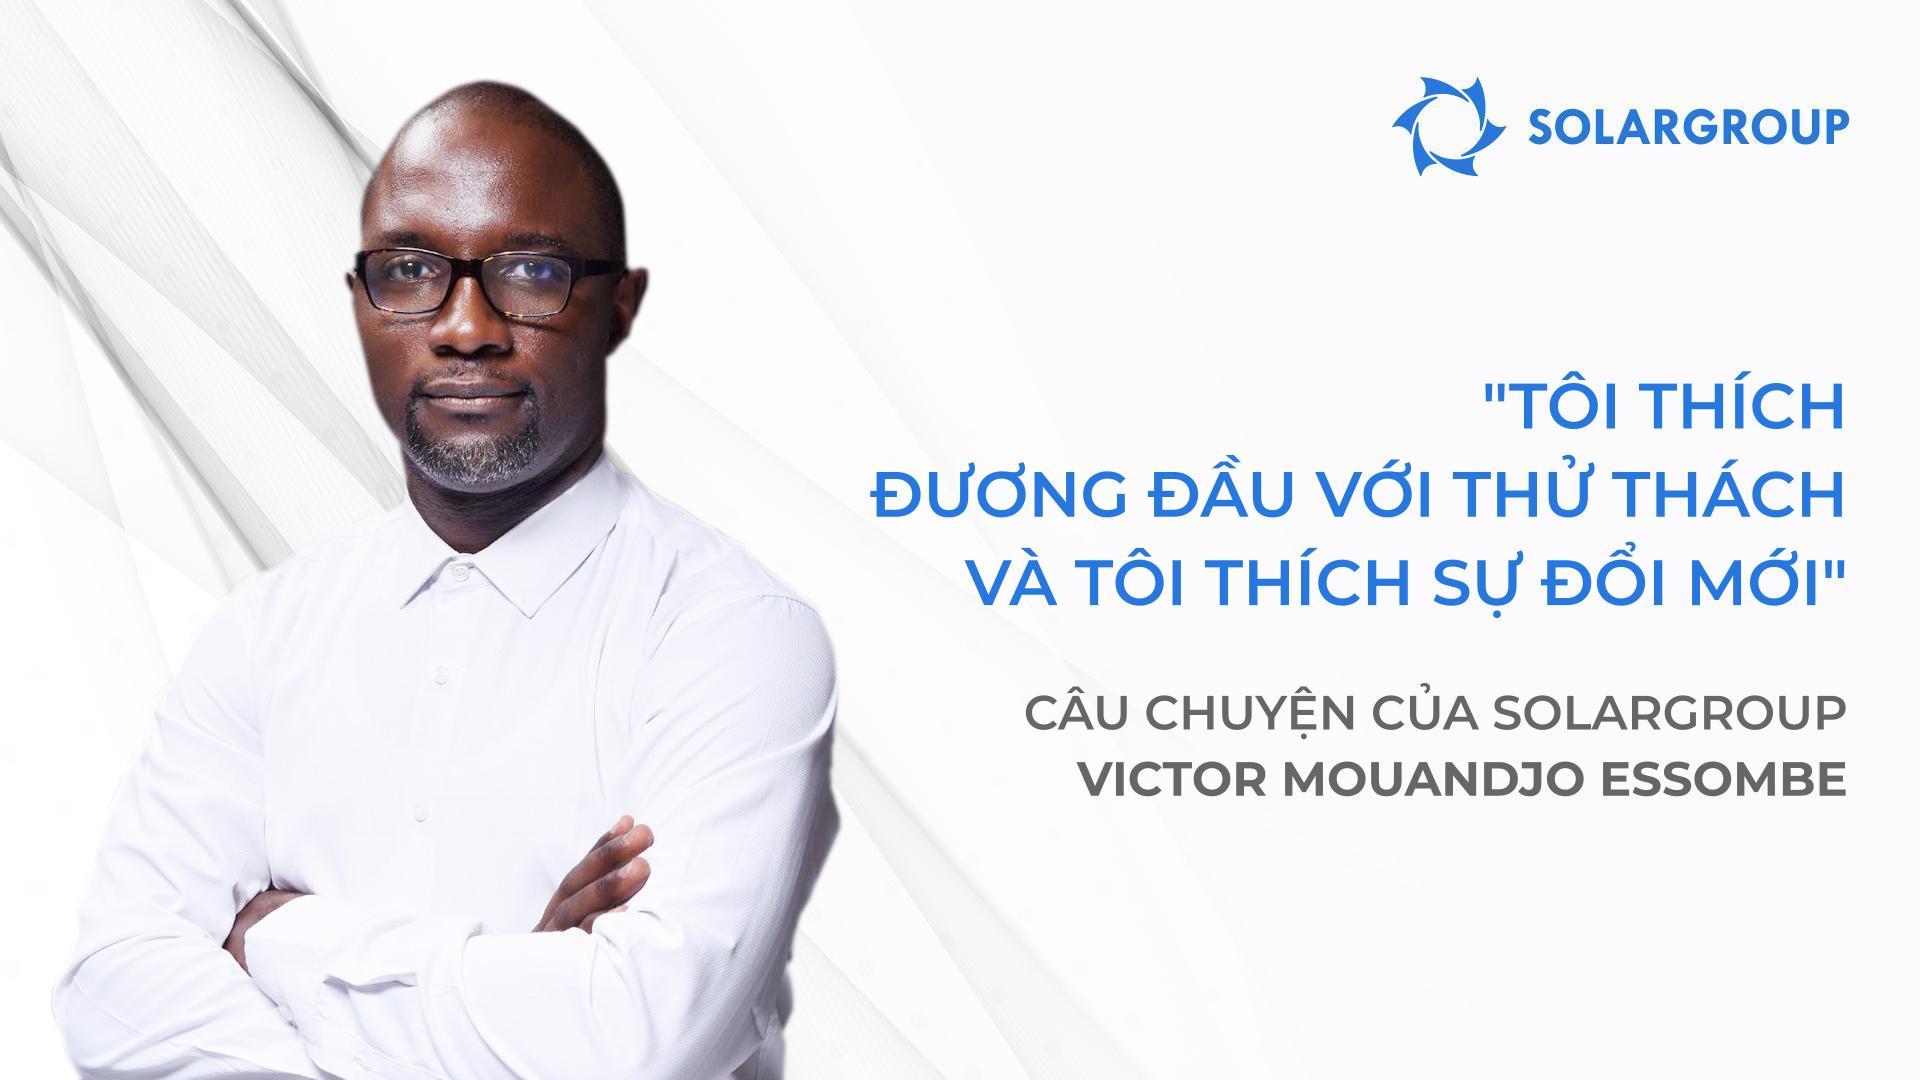 Đội của tôi và tôi có kế hoạch lớn! Câu chuyện của đối tác SOLARGROUP Victor Mouandjo Essombe